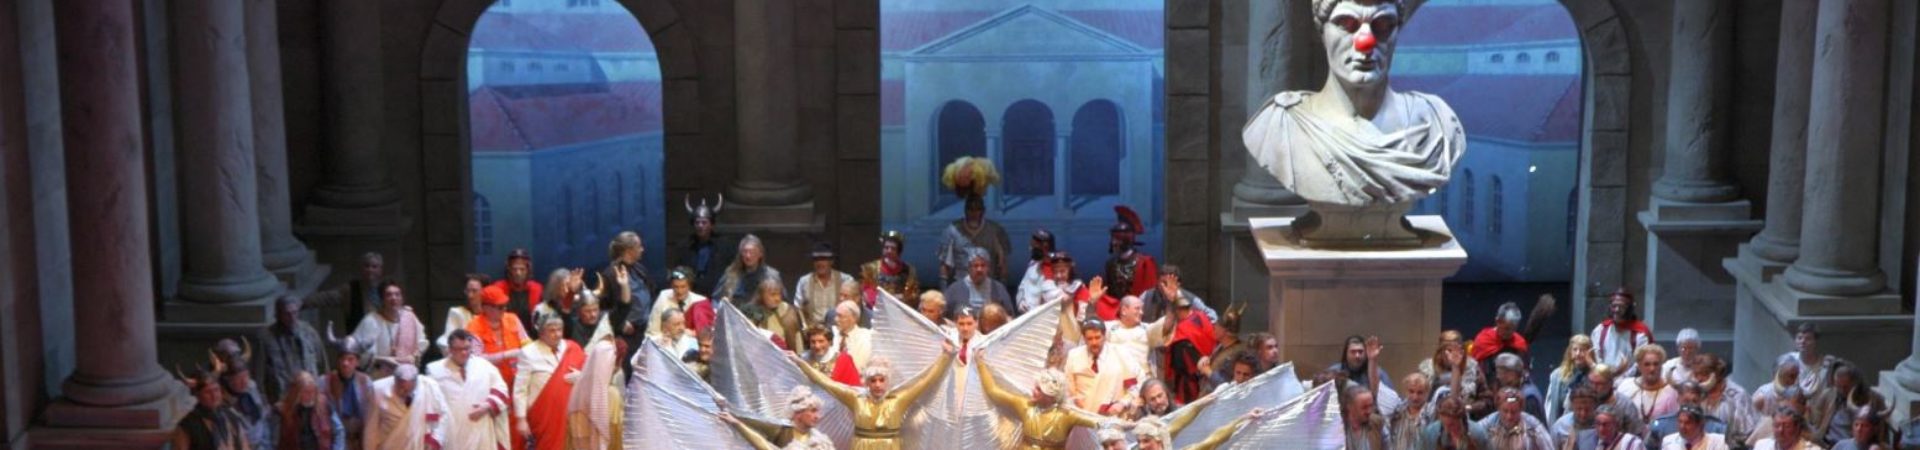 Vivat Colonia - Divertissementchen 2013 - Großer Chor mit Ballett in Pose